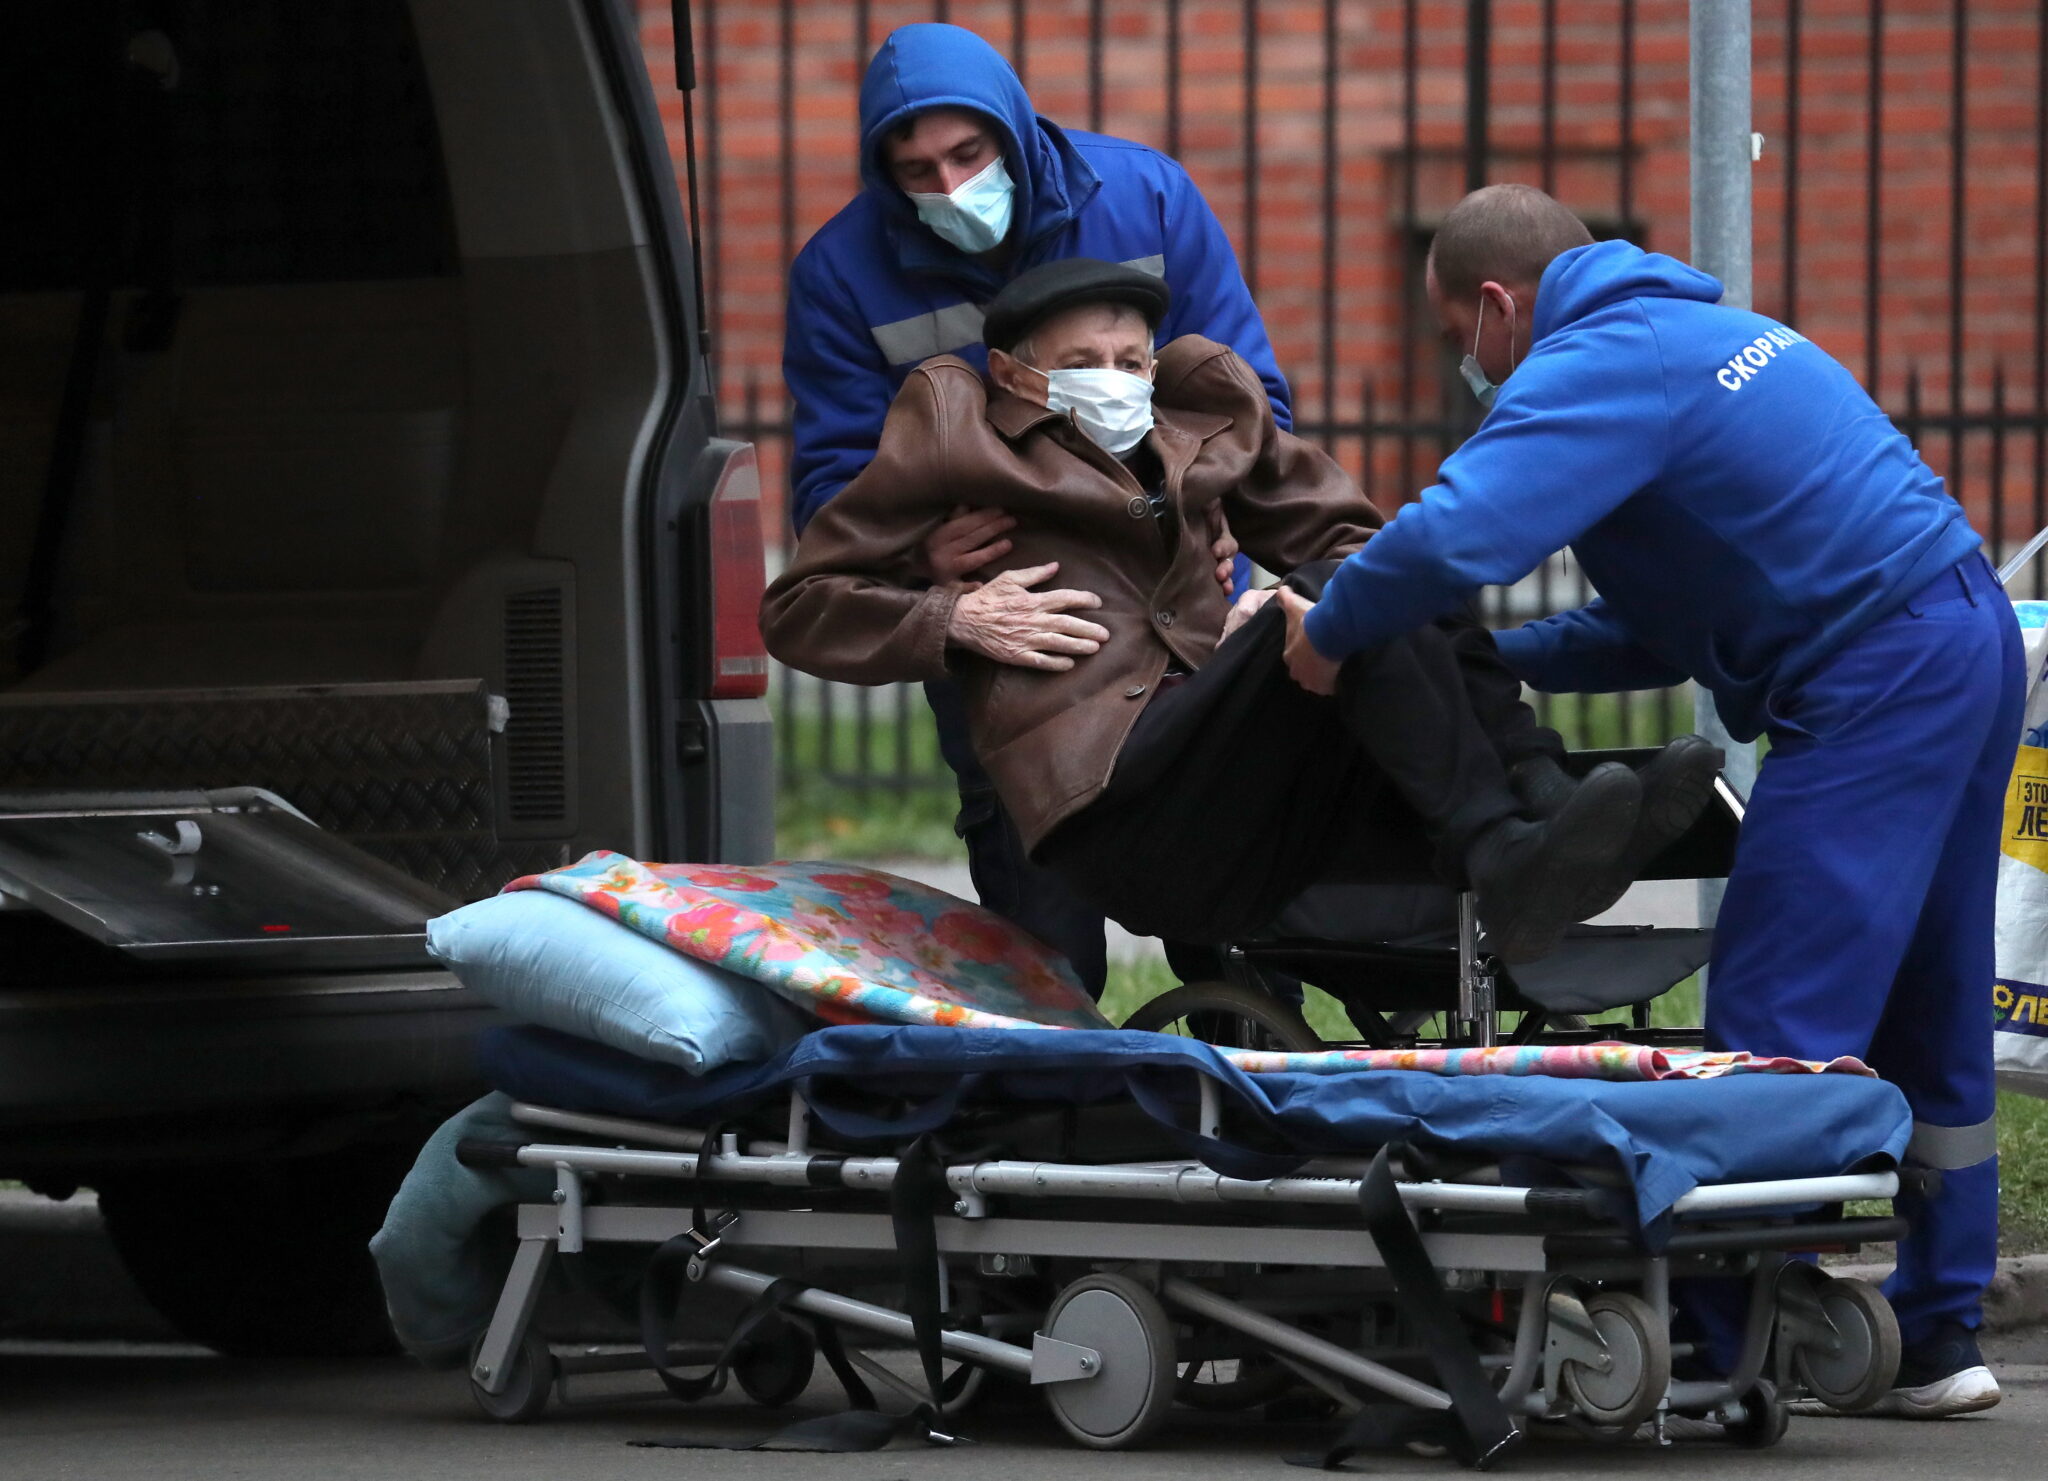 Работники "скорой помощи" транспортируют пациента с подозрением на Covid-19. Фото Alexander Demianchuk / TASS / Scanpix / Leta